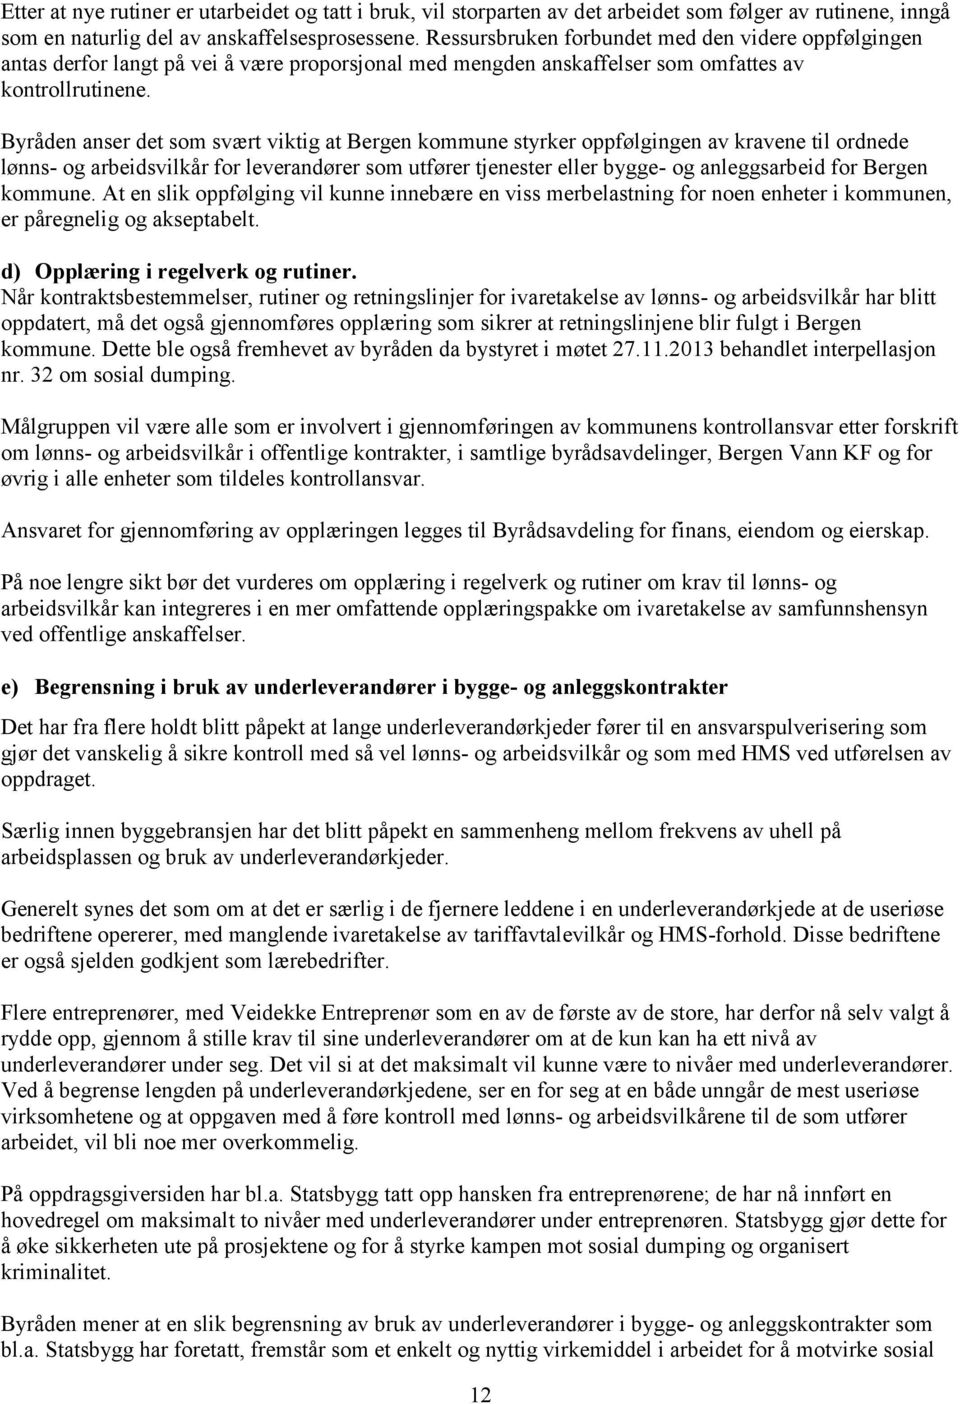 Byråden anser det som svært viktig at Bergen kommune styrker oppfølgingen av kravene til ordnede lønns- og arbeidsvilkår for leverandører som utfører tjenester eller bygge- og anleggsarbeid for